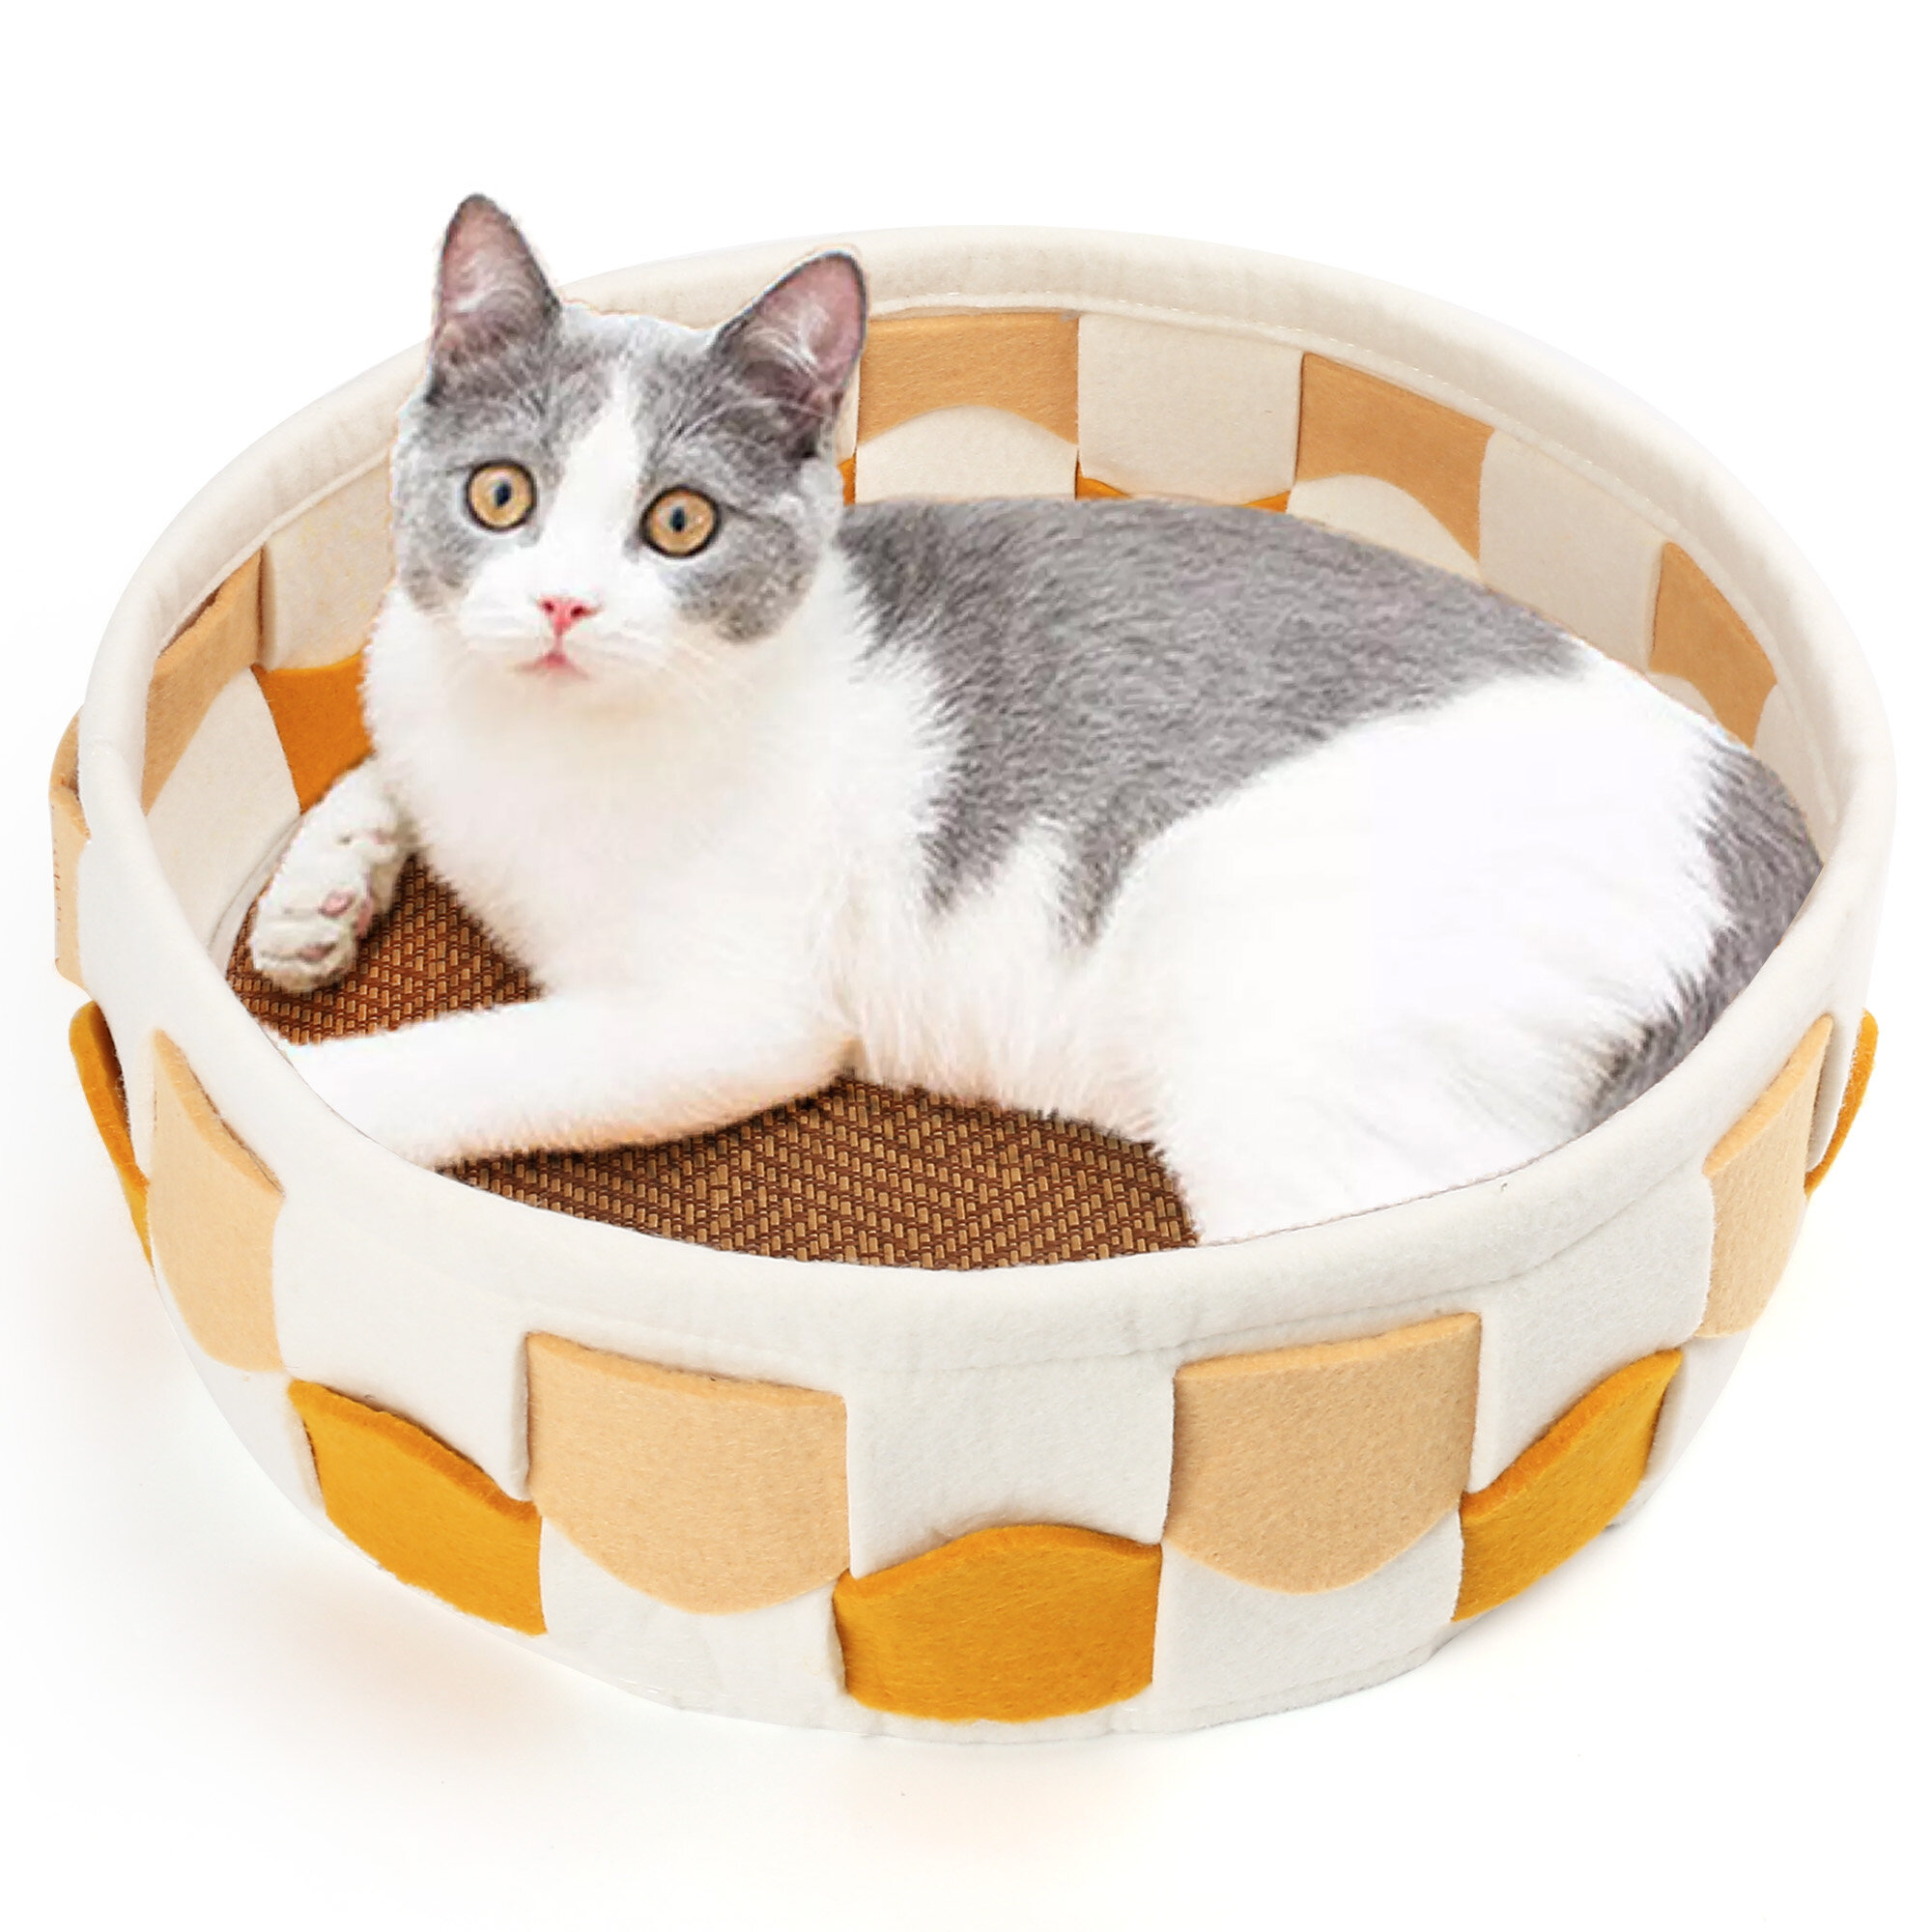 Round cat. Small Round Cat. Cat Indoor. Cat Pudding игрушка вилдберис.